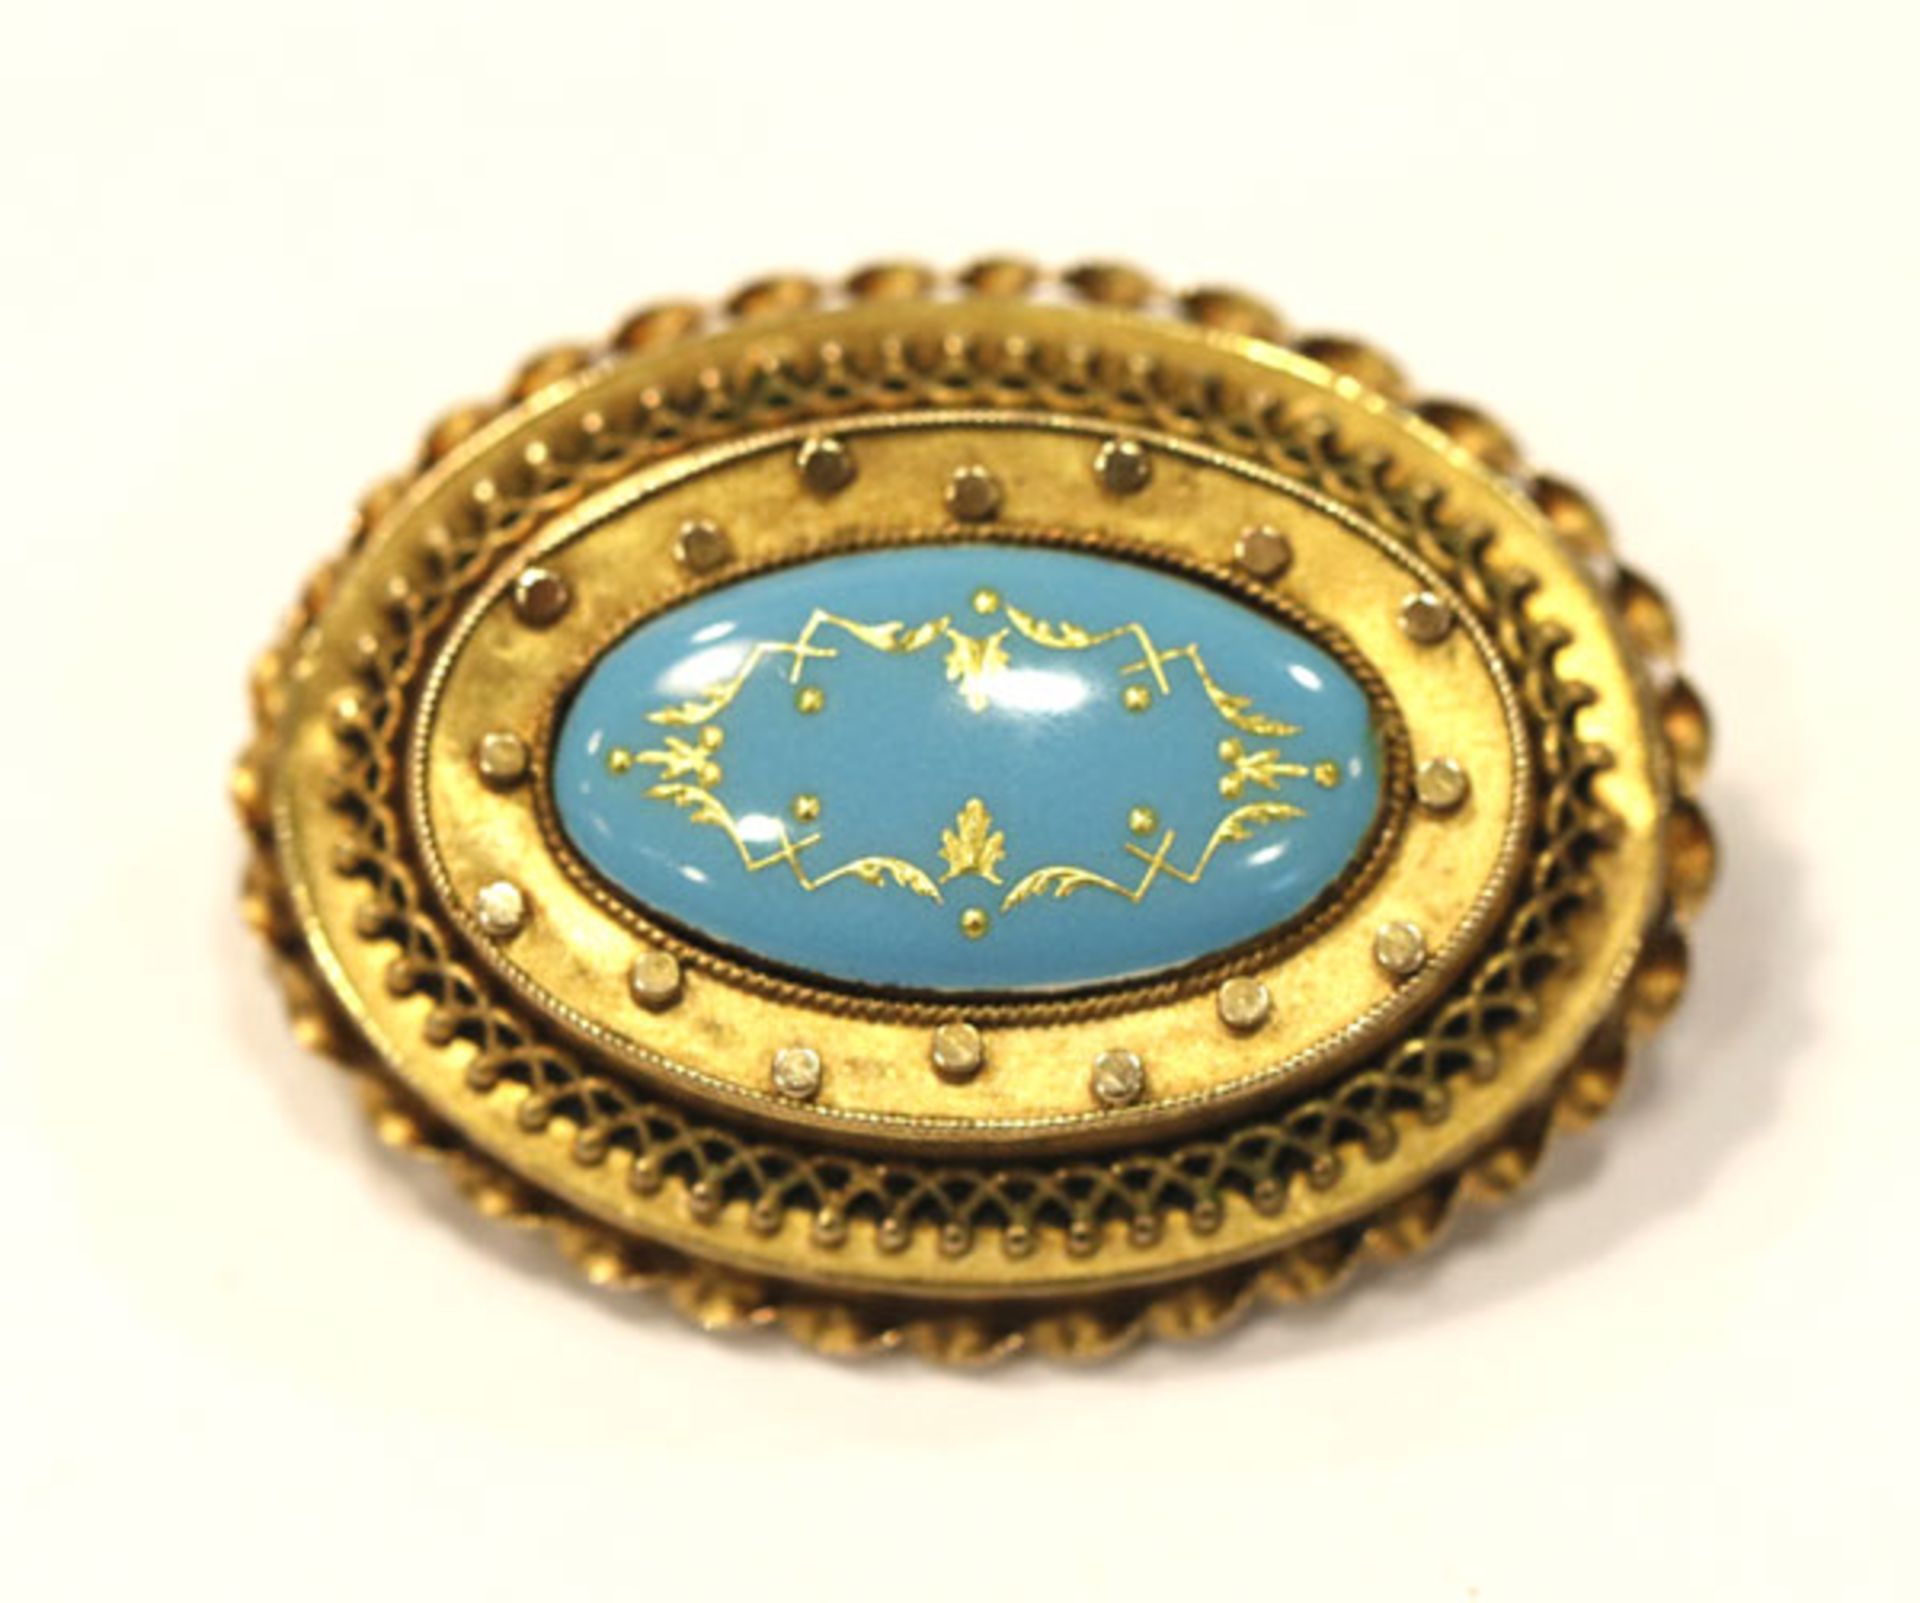 14 k Gelbgold Brosche mit hellblau/goldenem Emaildekor, 19. Jahrhundert, schöne Handarbeit, 9,4 gr.,